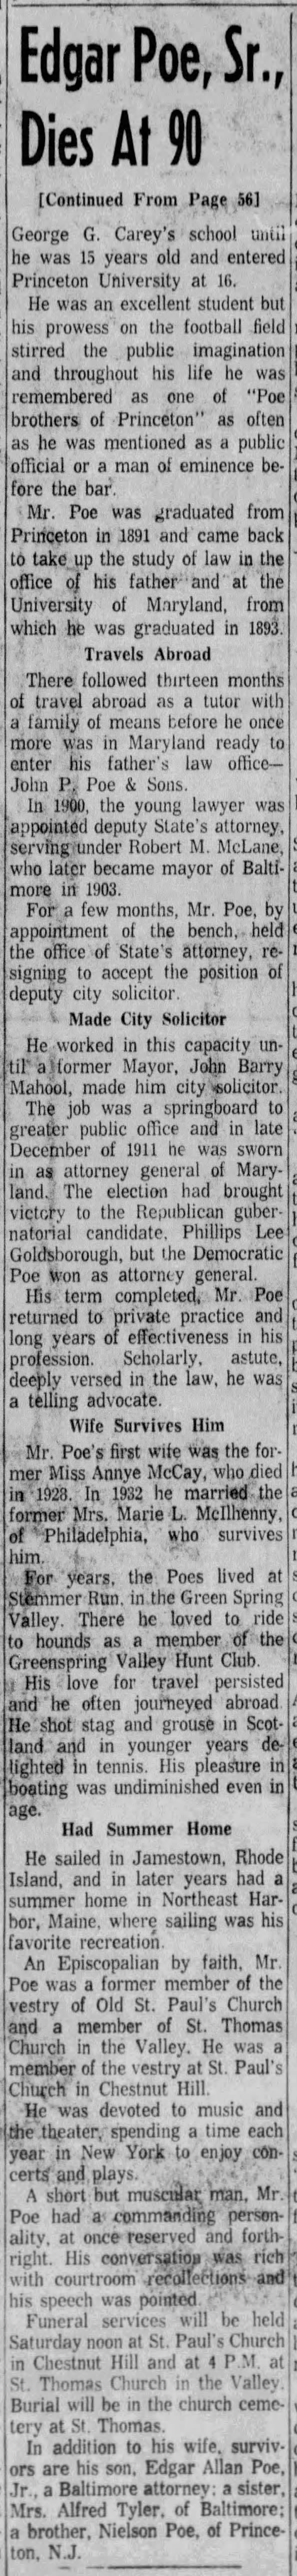 Edgar Poe, Sr., Dies At 90; 30 Nov 1961; The Evening Sun; 42